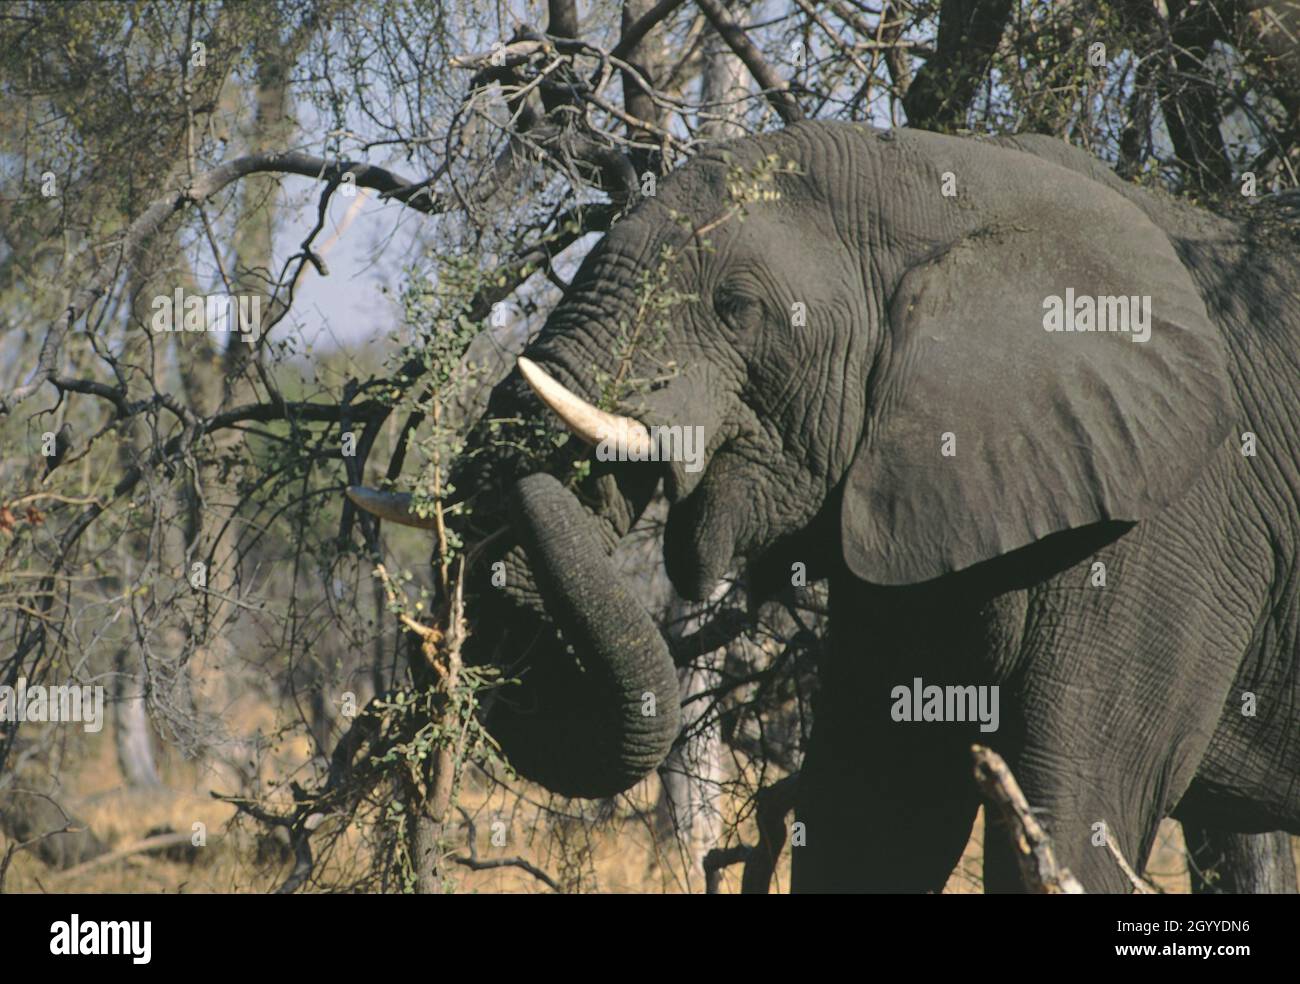 L'éléphant d'Afrique (Loxodonta africana), également connu sous le nom d'éléphant de savane africaine, est le plus grand animal terrestre vivant d'Afrique australe Banque D'Images